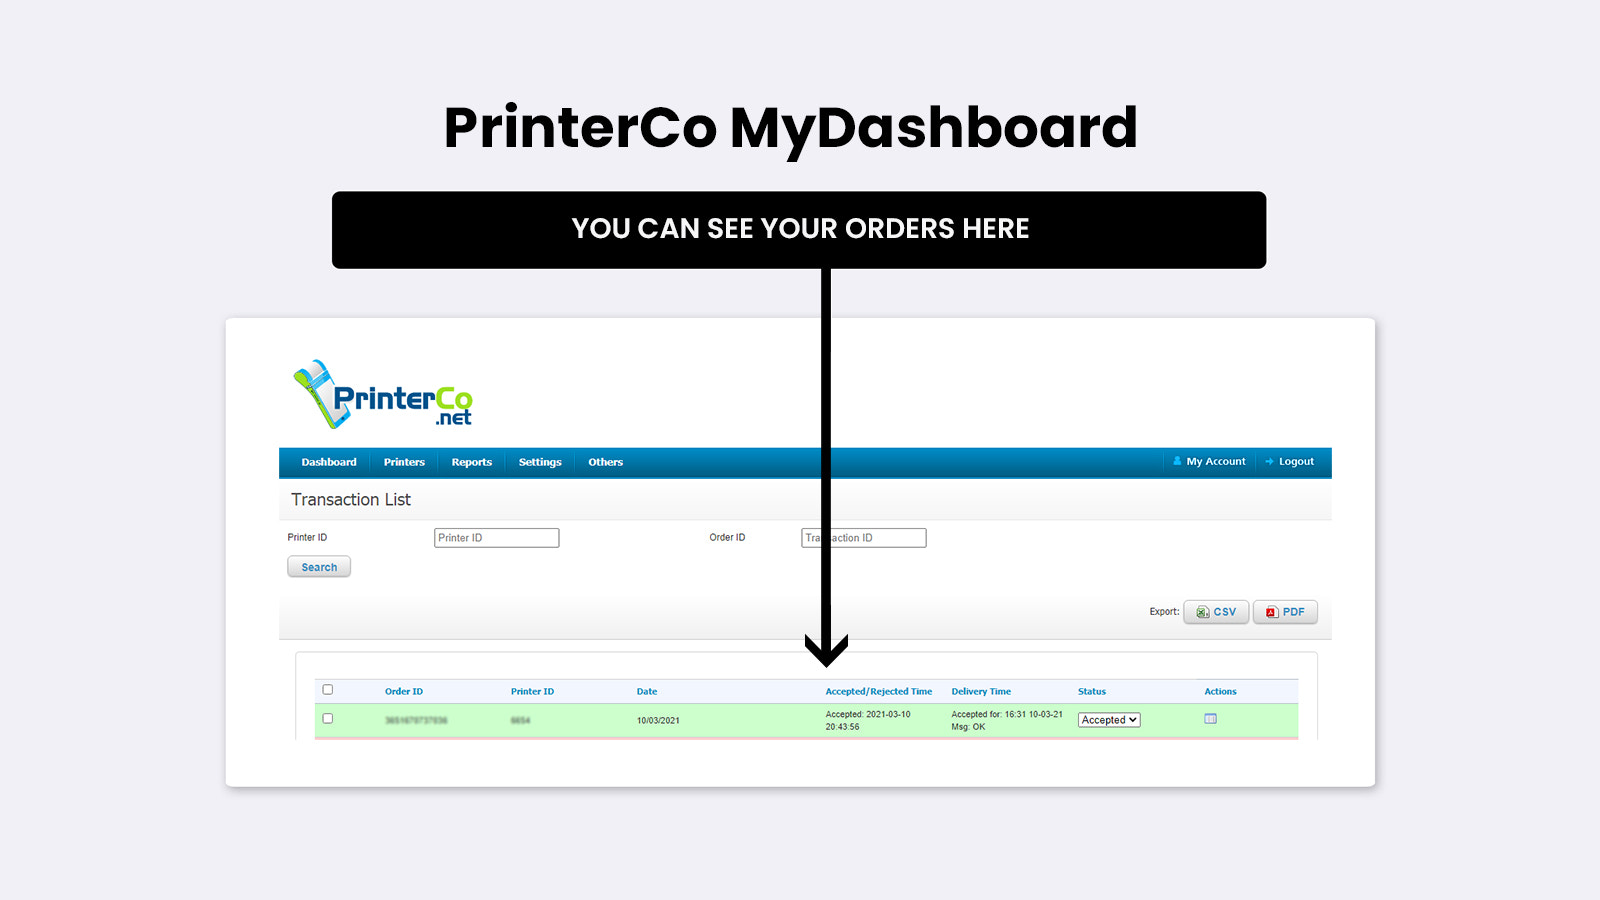 Dette er PrinterCo MyDashboard panel ordreoversigt visning